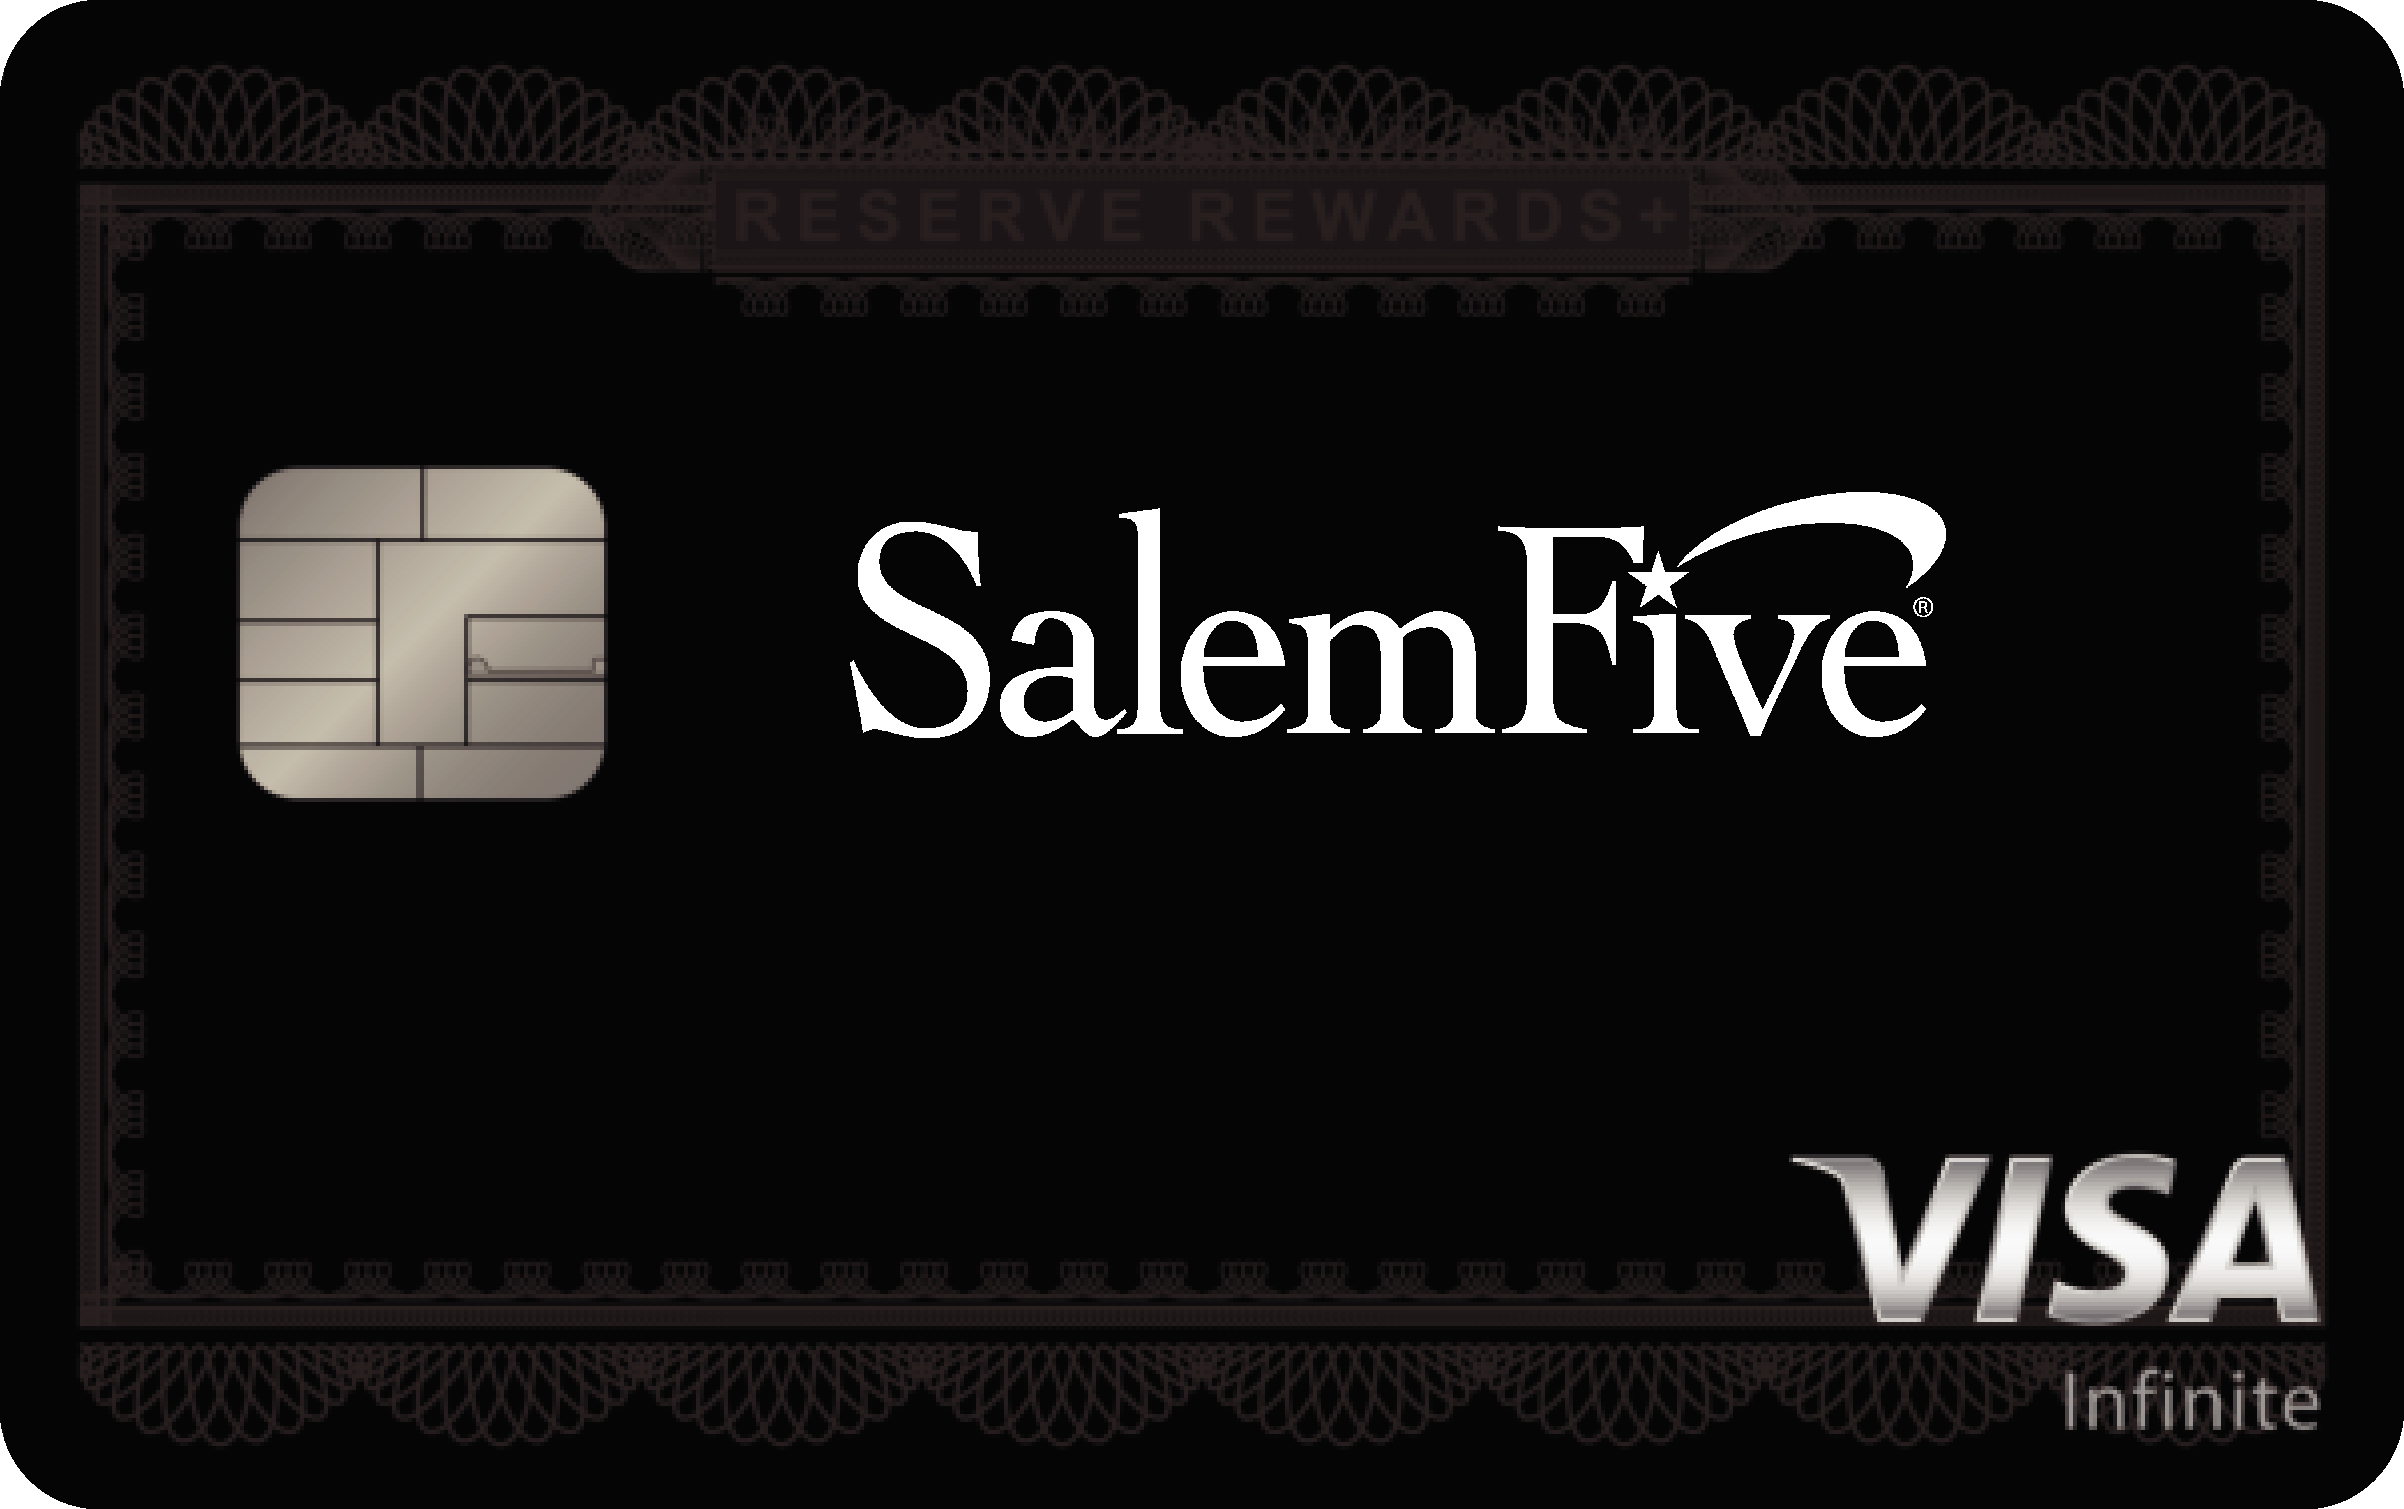 Salem Five Bank Reserve Rewards+ Card